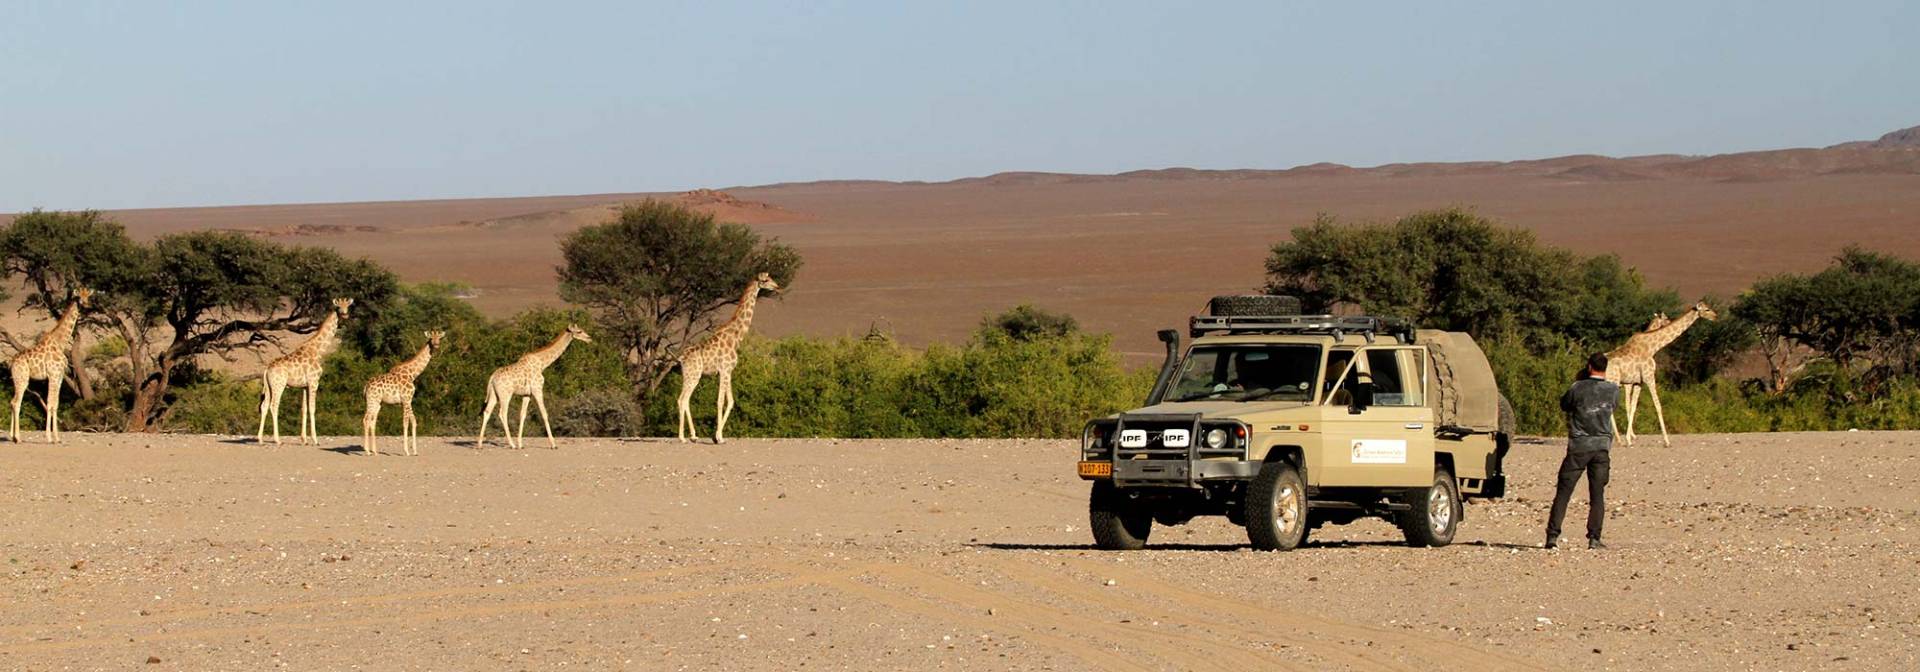 Giraffen im Damaraland